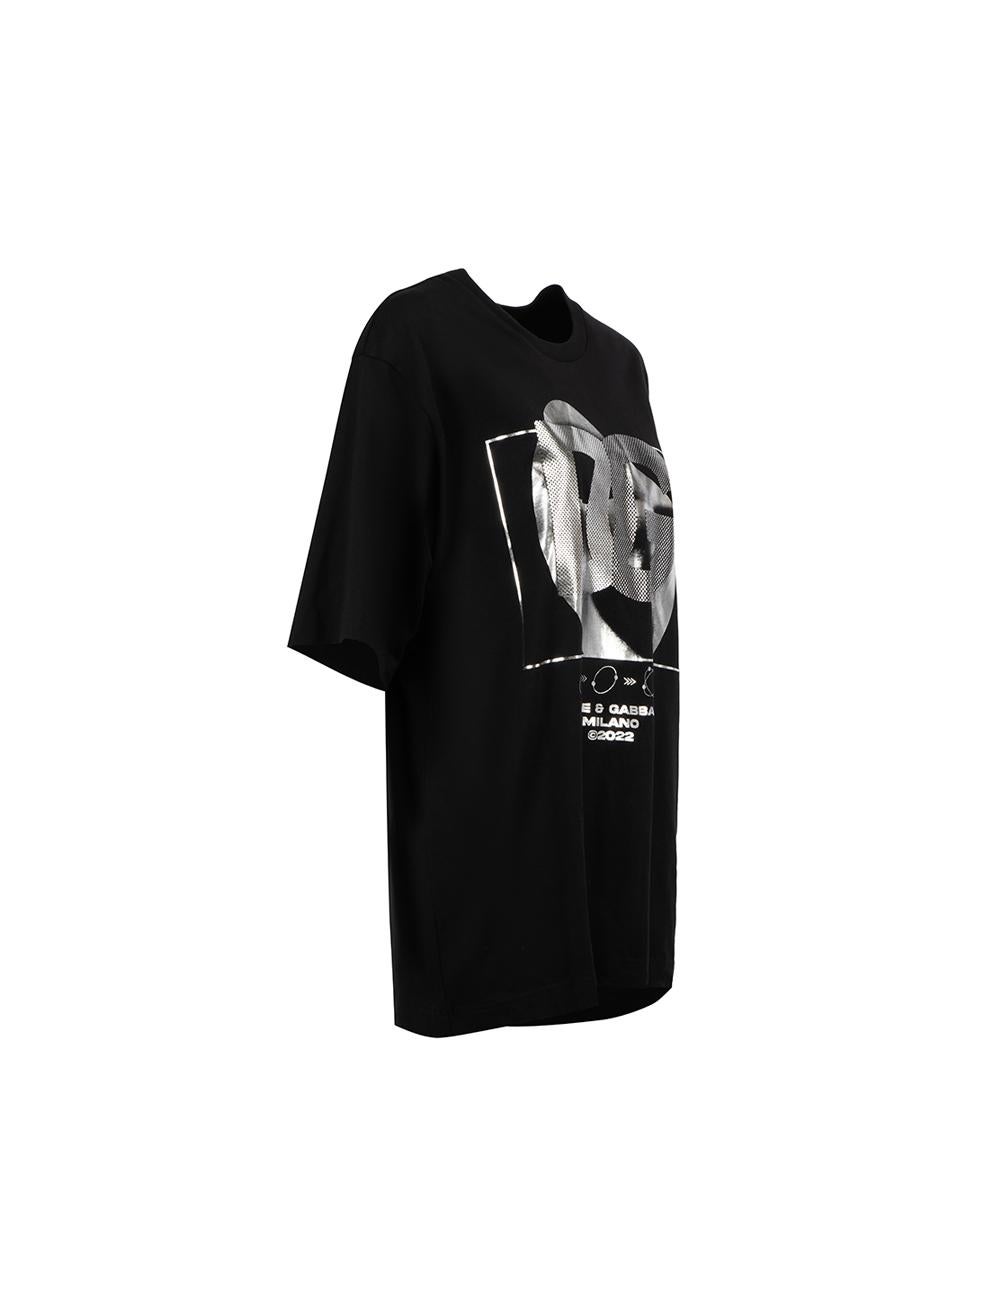 CONDITION ist nie getragen, mit Tags. Keine sichtbaren Abnutzungserscheinungen am T-Shirt sind an diesem neuen Dolce & Gabbana Designer-Wiederverkaufsartikel erkennbar.



Einzelheiten


Unisex

Schwarz

Baumwolle

Kurzarm-T-Shirt

Überdimensionale